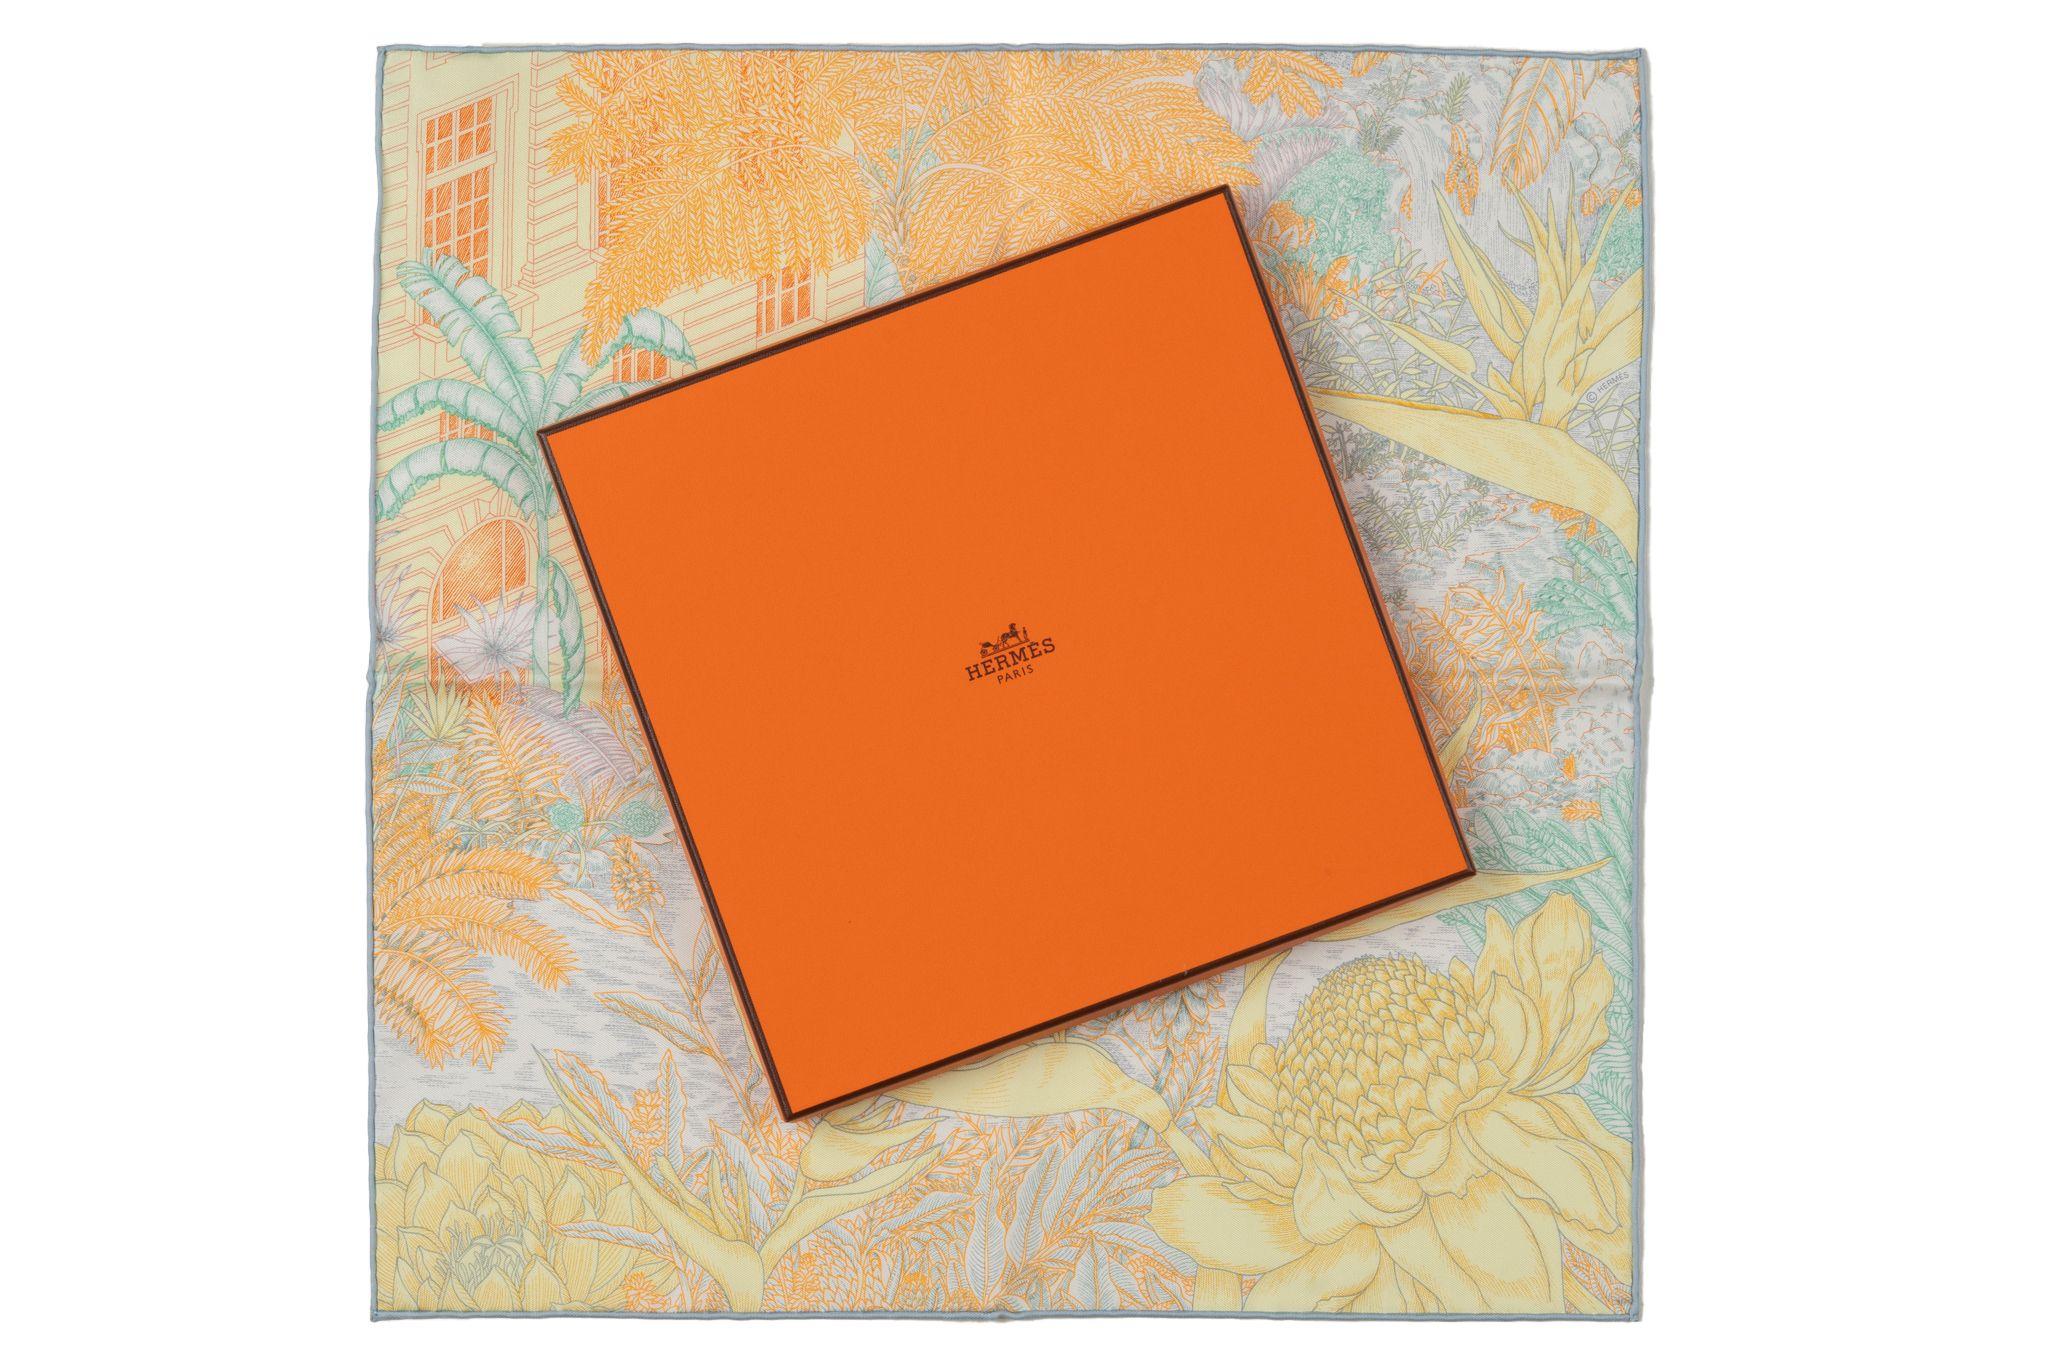 Hermès Marke neu in Box tropischen Garten orange gelbe Seide gavroche. Handgerollte Kanten. Kommt mit Originalverpackung. 